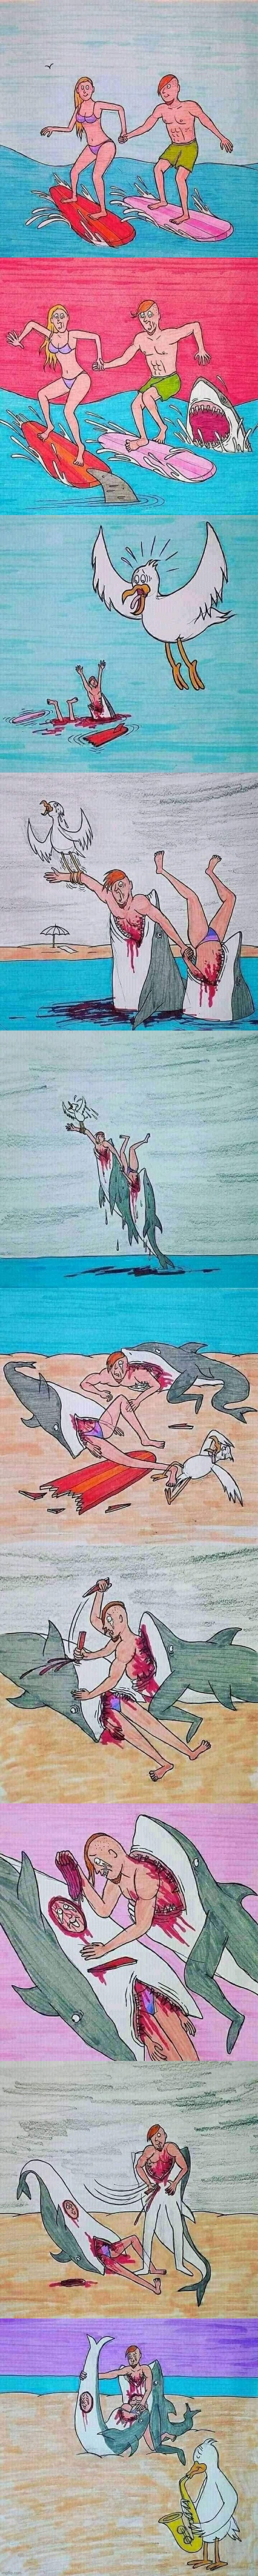 Shark attack love story full Blank Meme Template